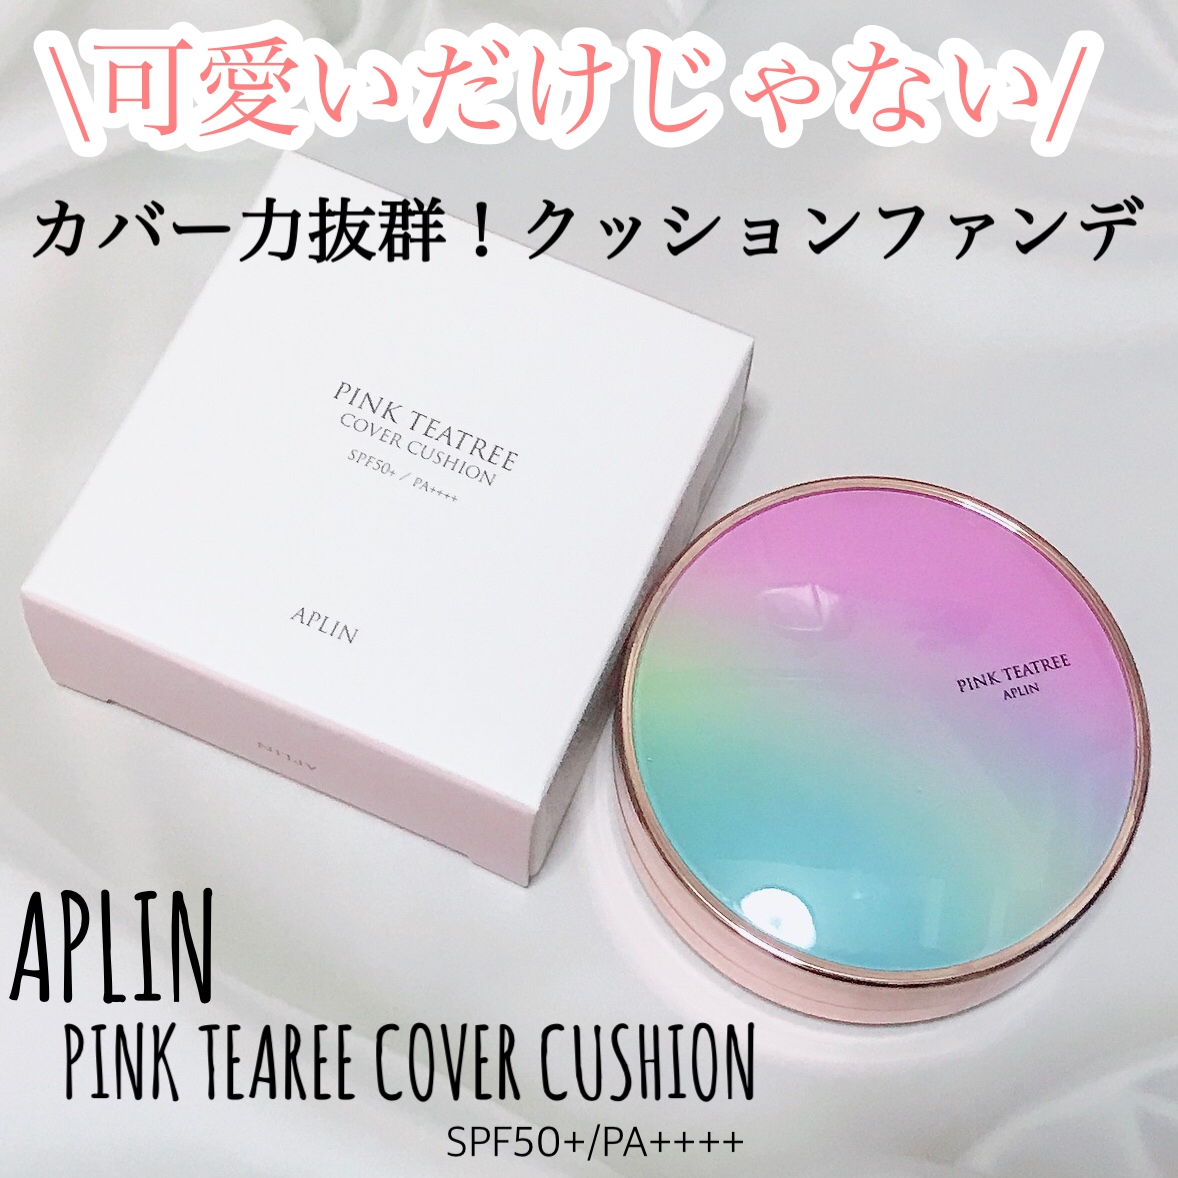 APLIN(アプリン) ピンクティーツリーカバークッションを使ったMarukoさんのクチコミ画像1